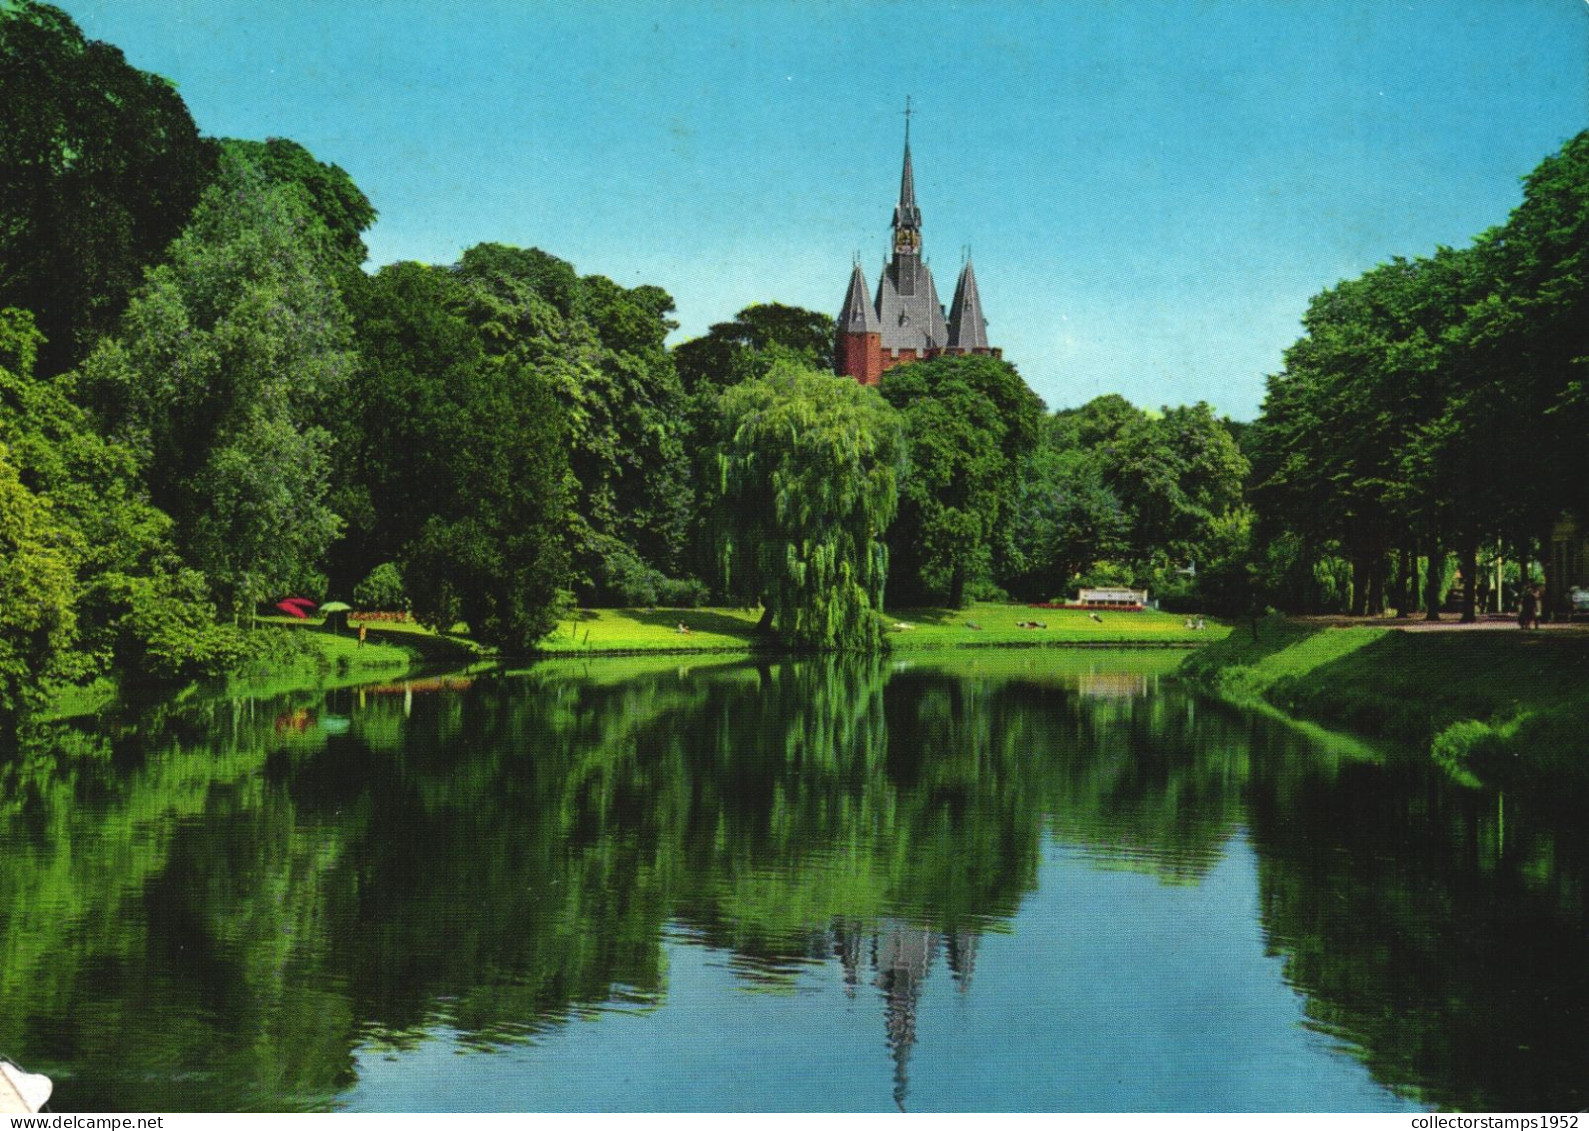 ZWOLLE, CHURCH, ARCHITECTURE, UMBRELLA, PARK, NETHERLANDS - Zwolle